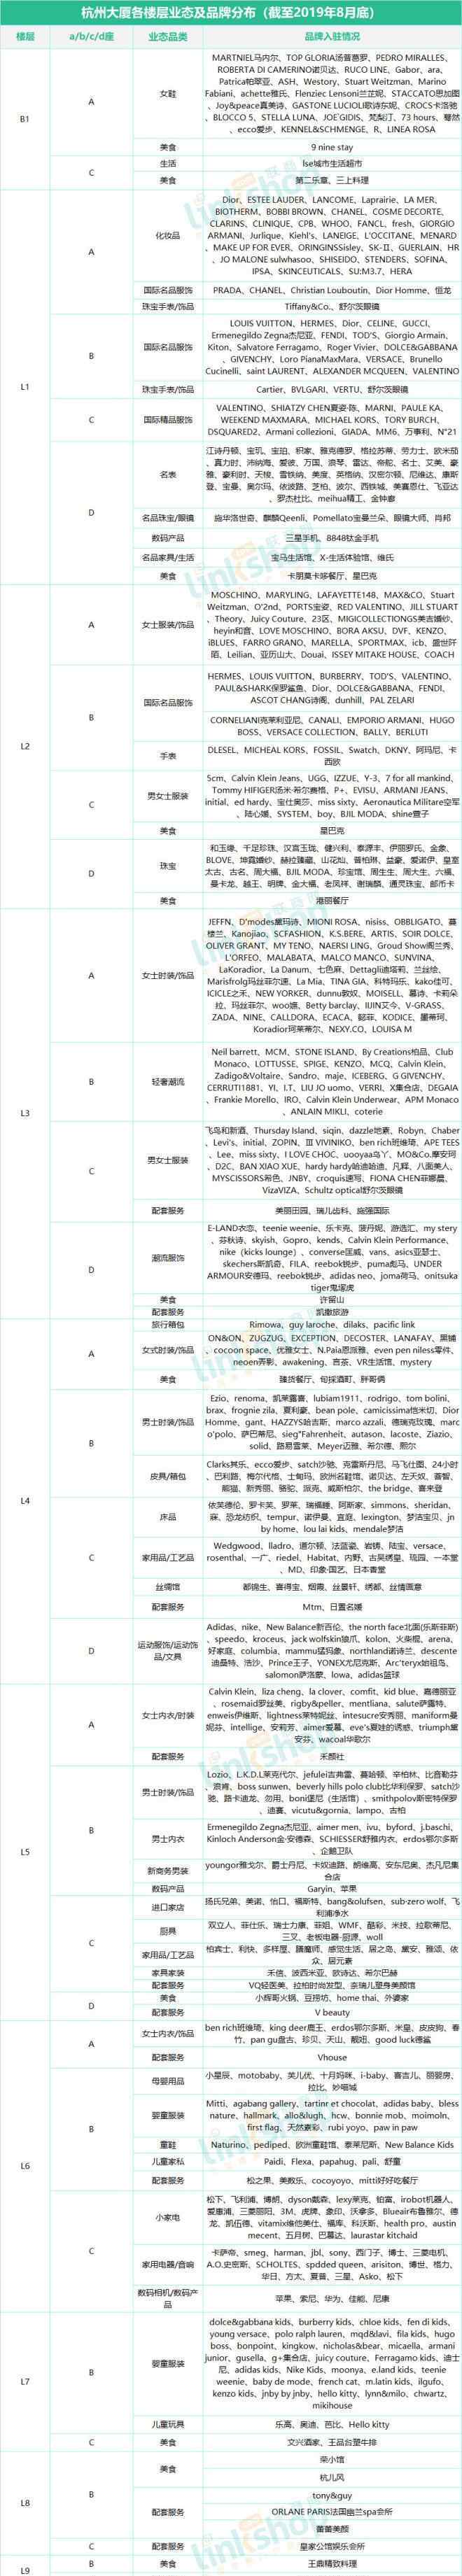 杭州最大购物中心 杭州17座购物中心、百货最全品牌曝光